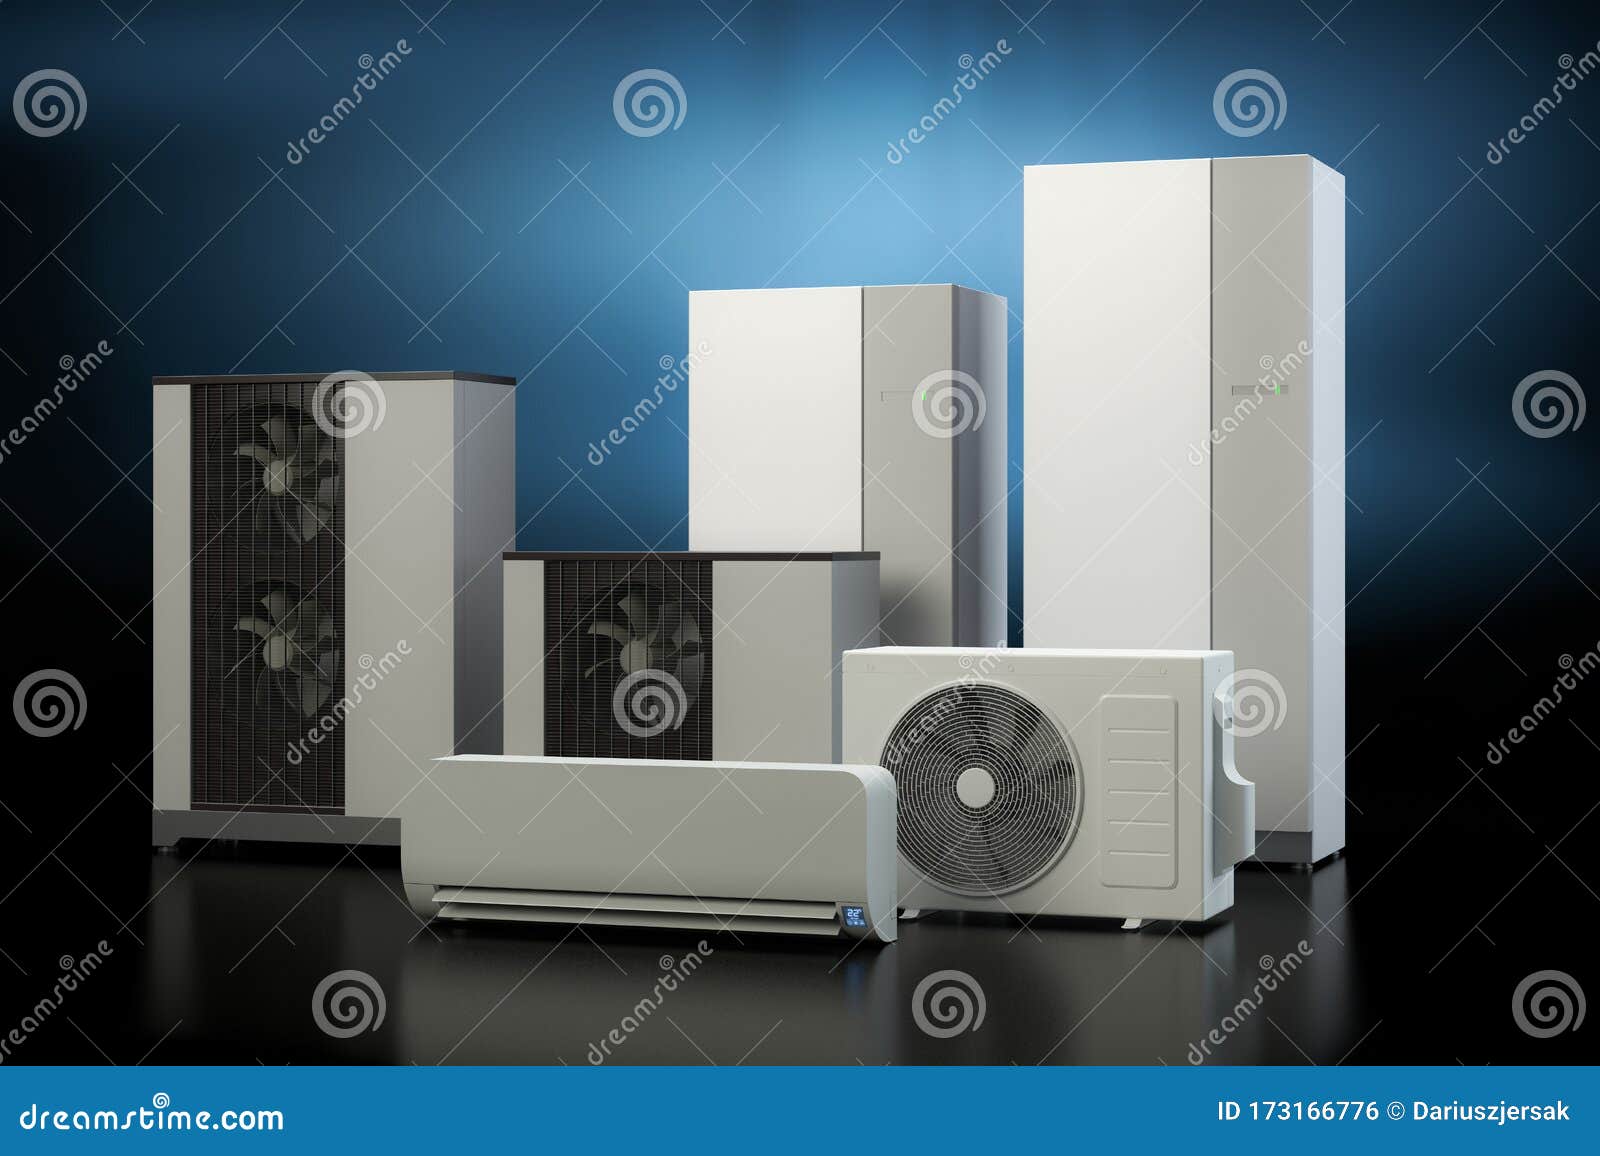 air heat pump collection - dark background, 3d 